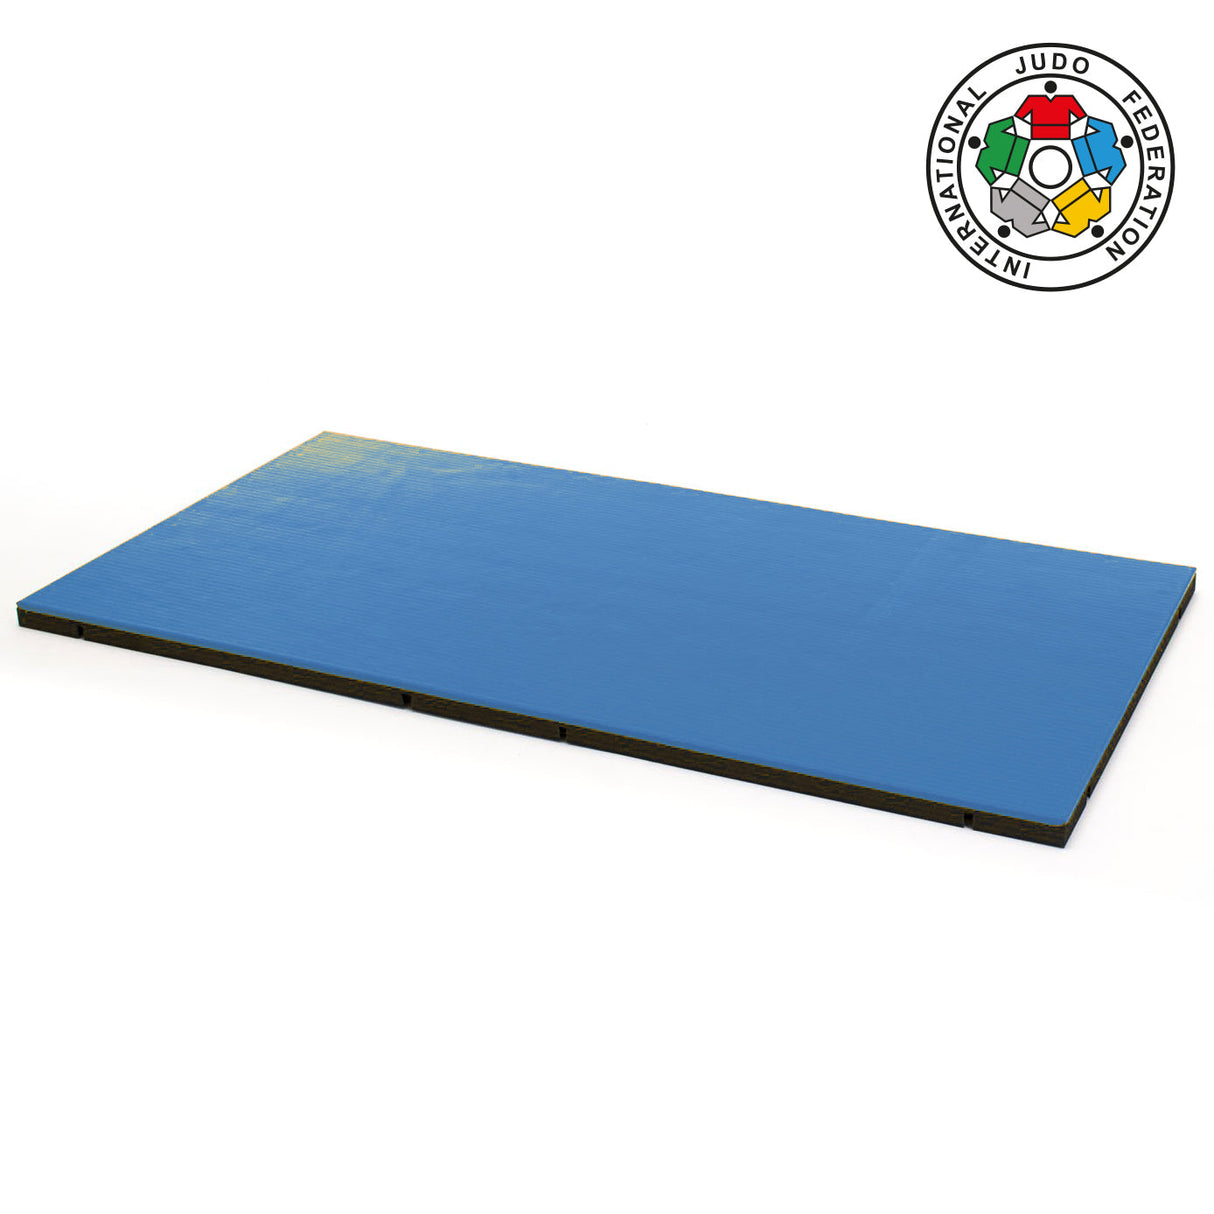 Tatami de judo Trocellen I-TIS Judo IJF 2x1 m - bleu - 5cm, 85266001-B